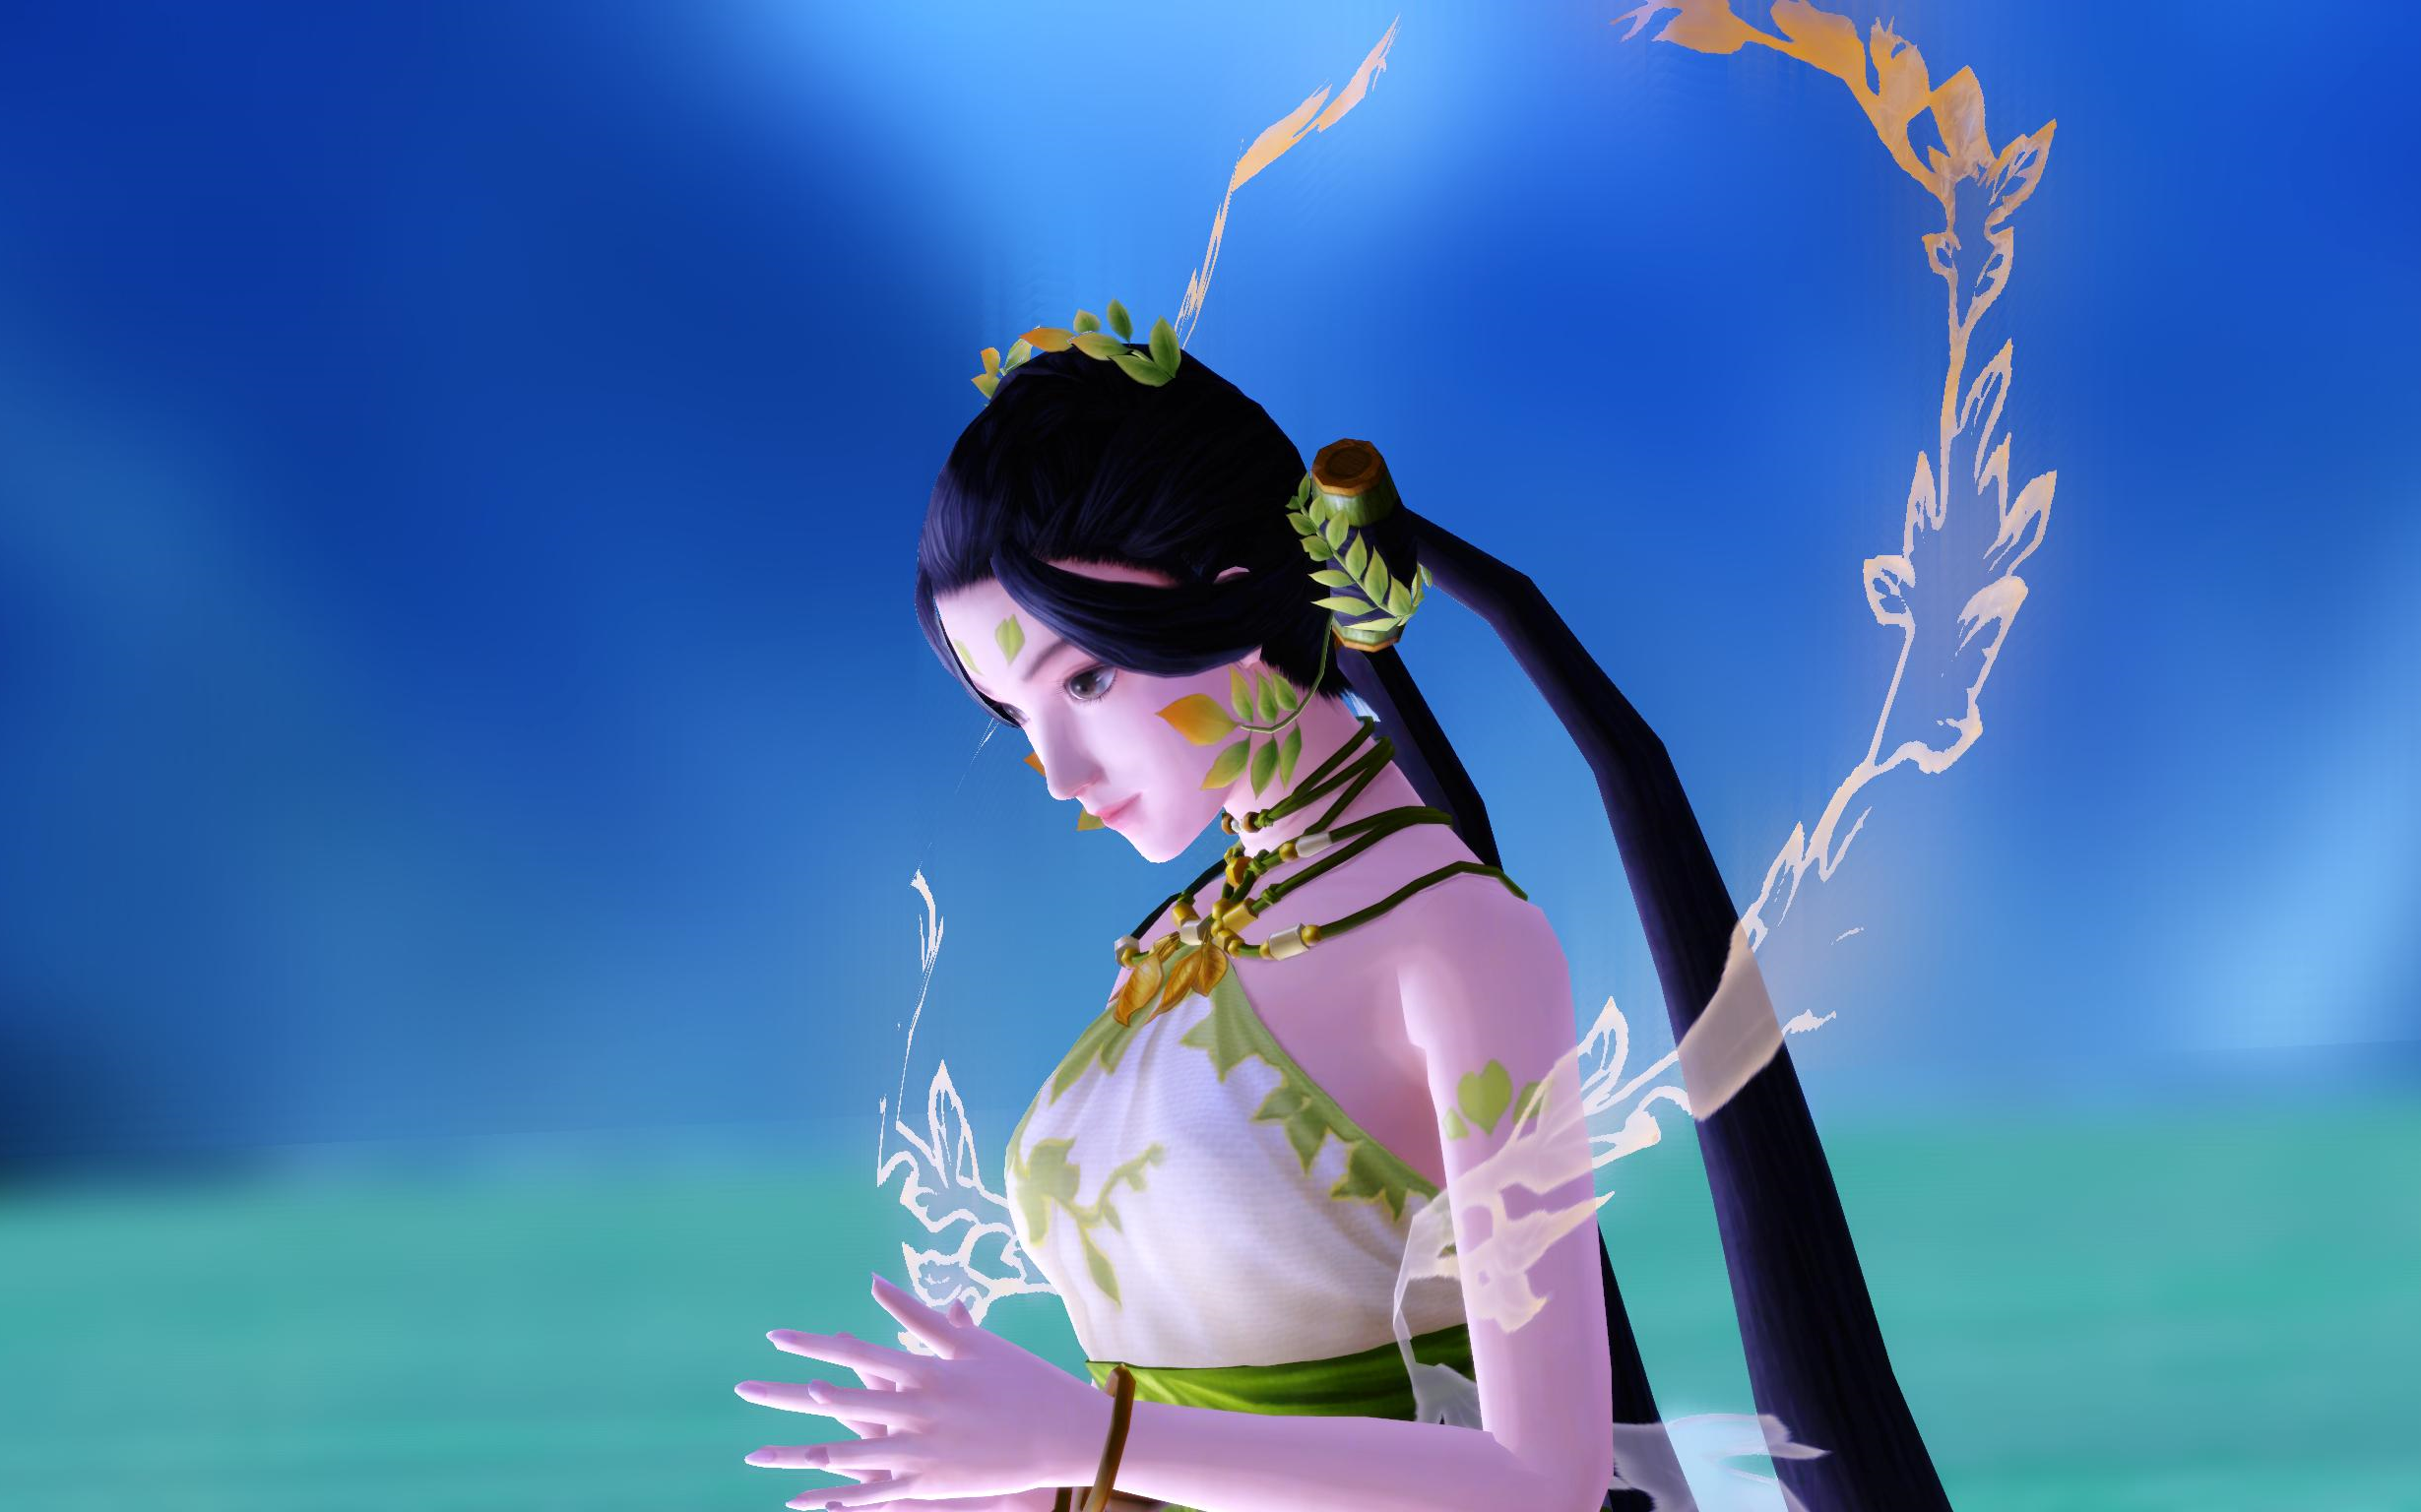 巫山神女古剑图片